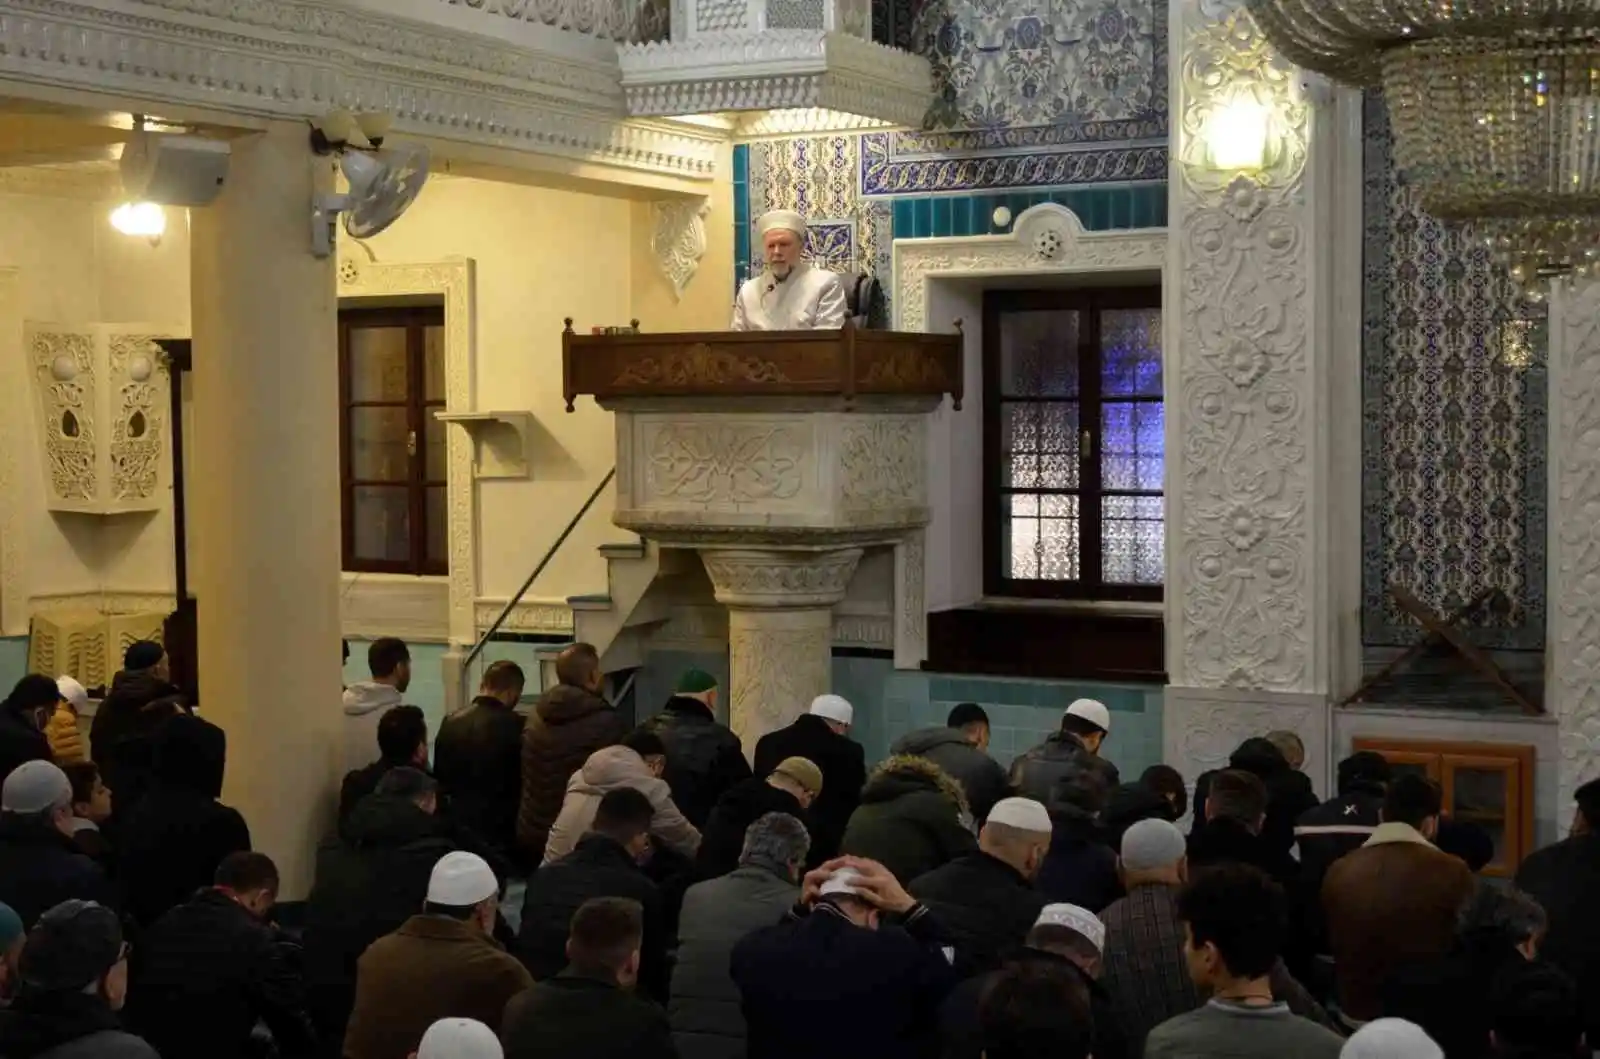 Denizli'deki camilerde İsveç'e tepki olarak Kur'an okunarak dua edildi
